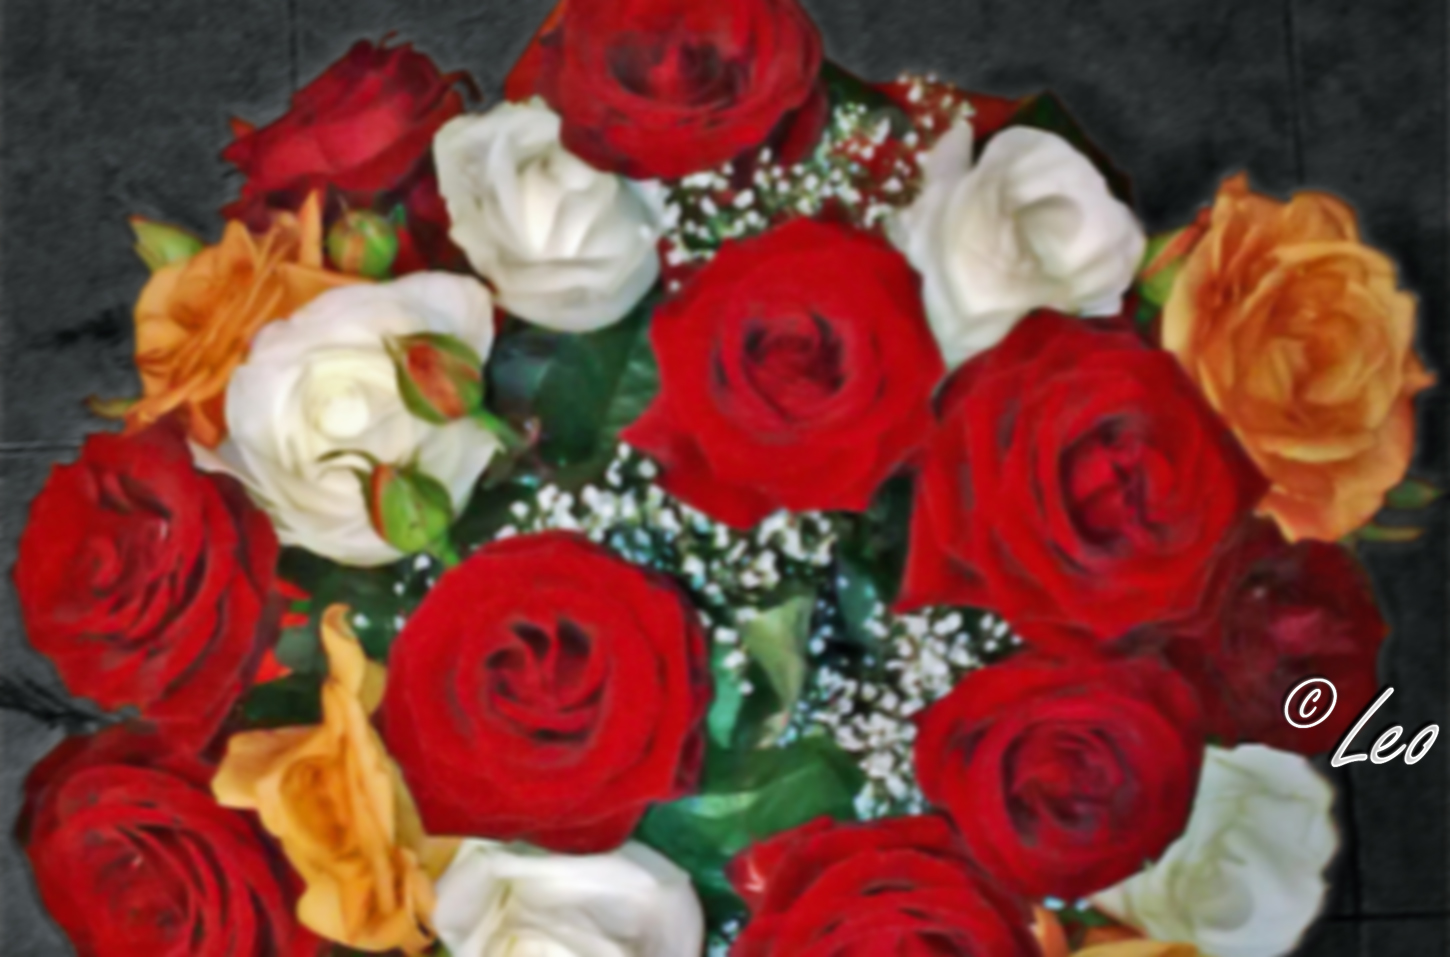 ... -YI/AAAAAAAAAAU/yCveB4rui-w/s1600/Roses+from+my+love+Roxi+by+Leo.jpg